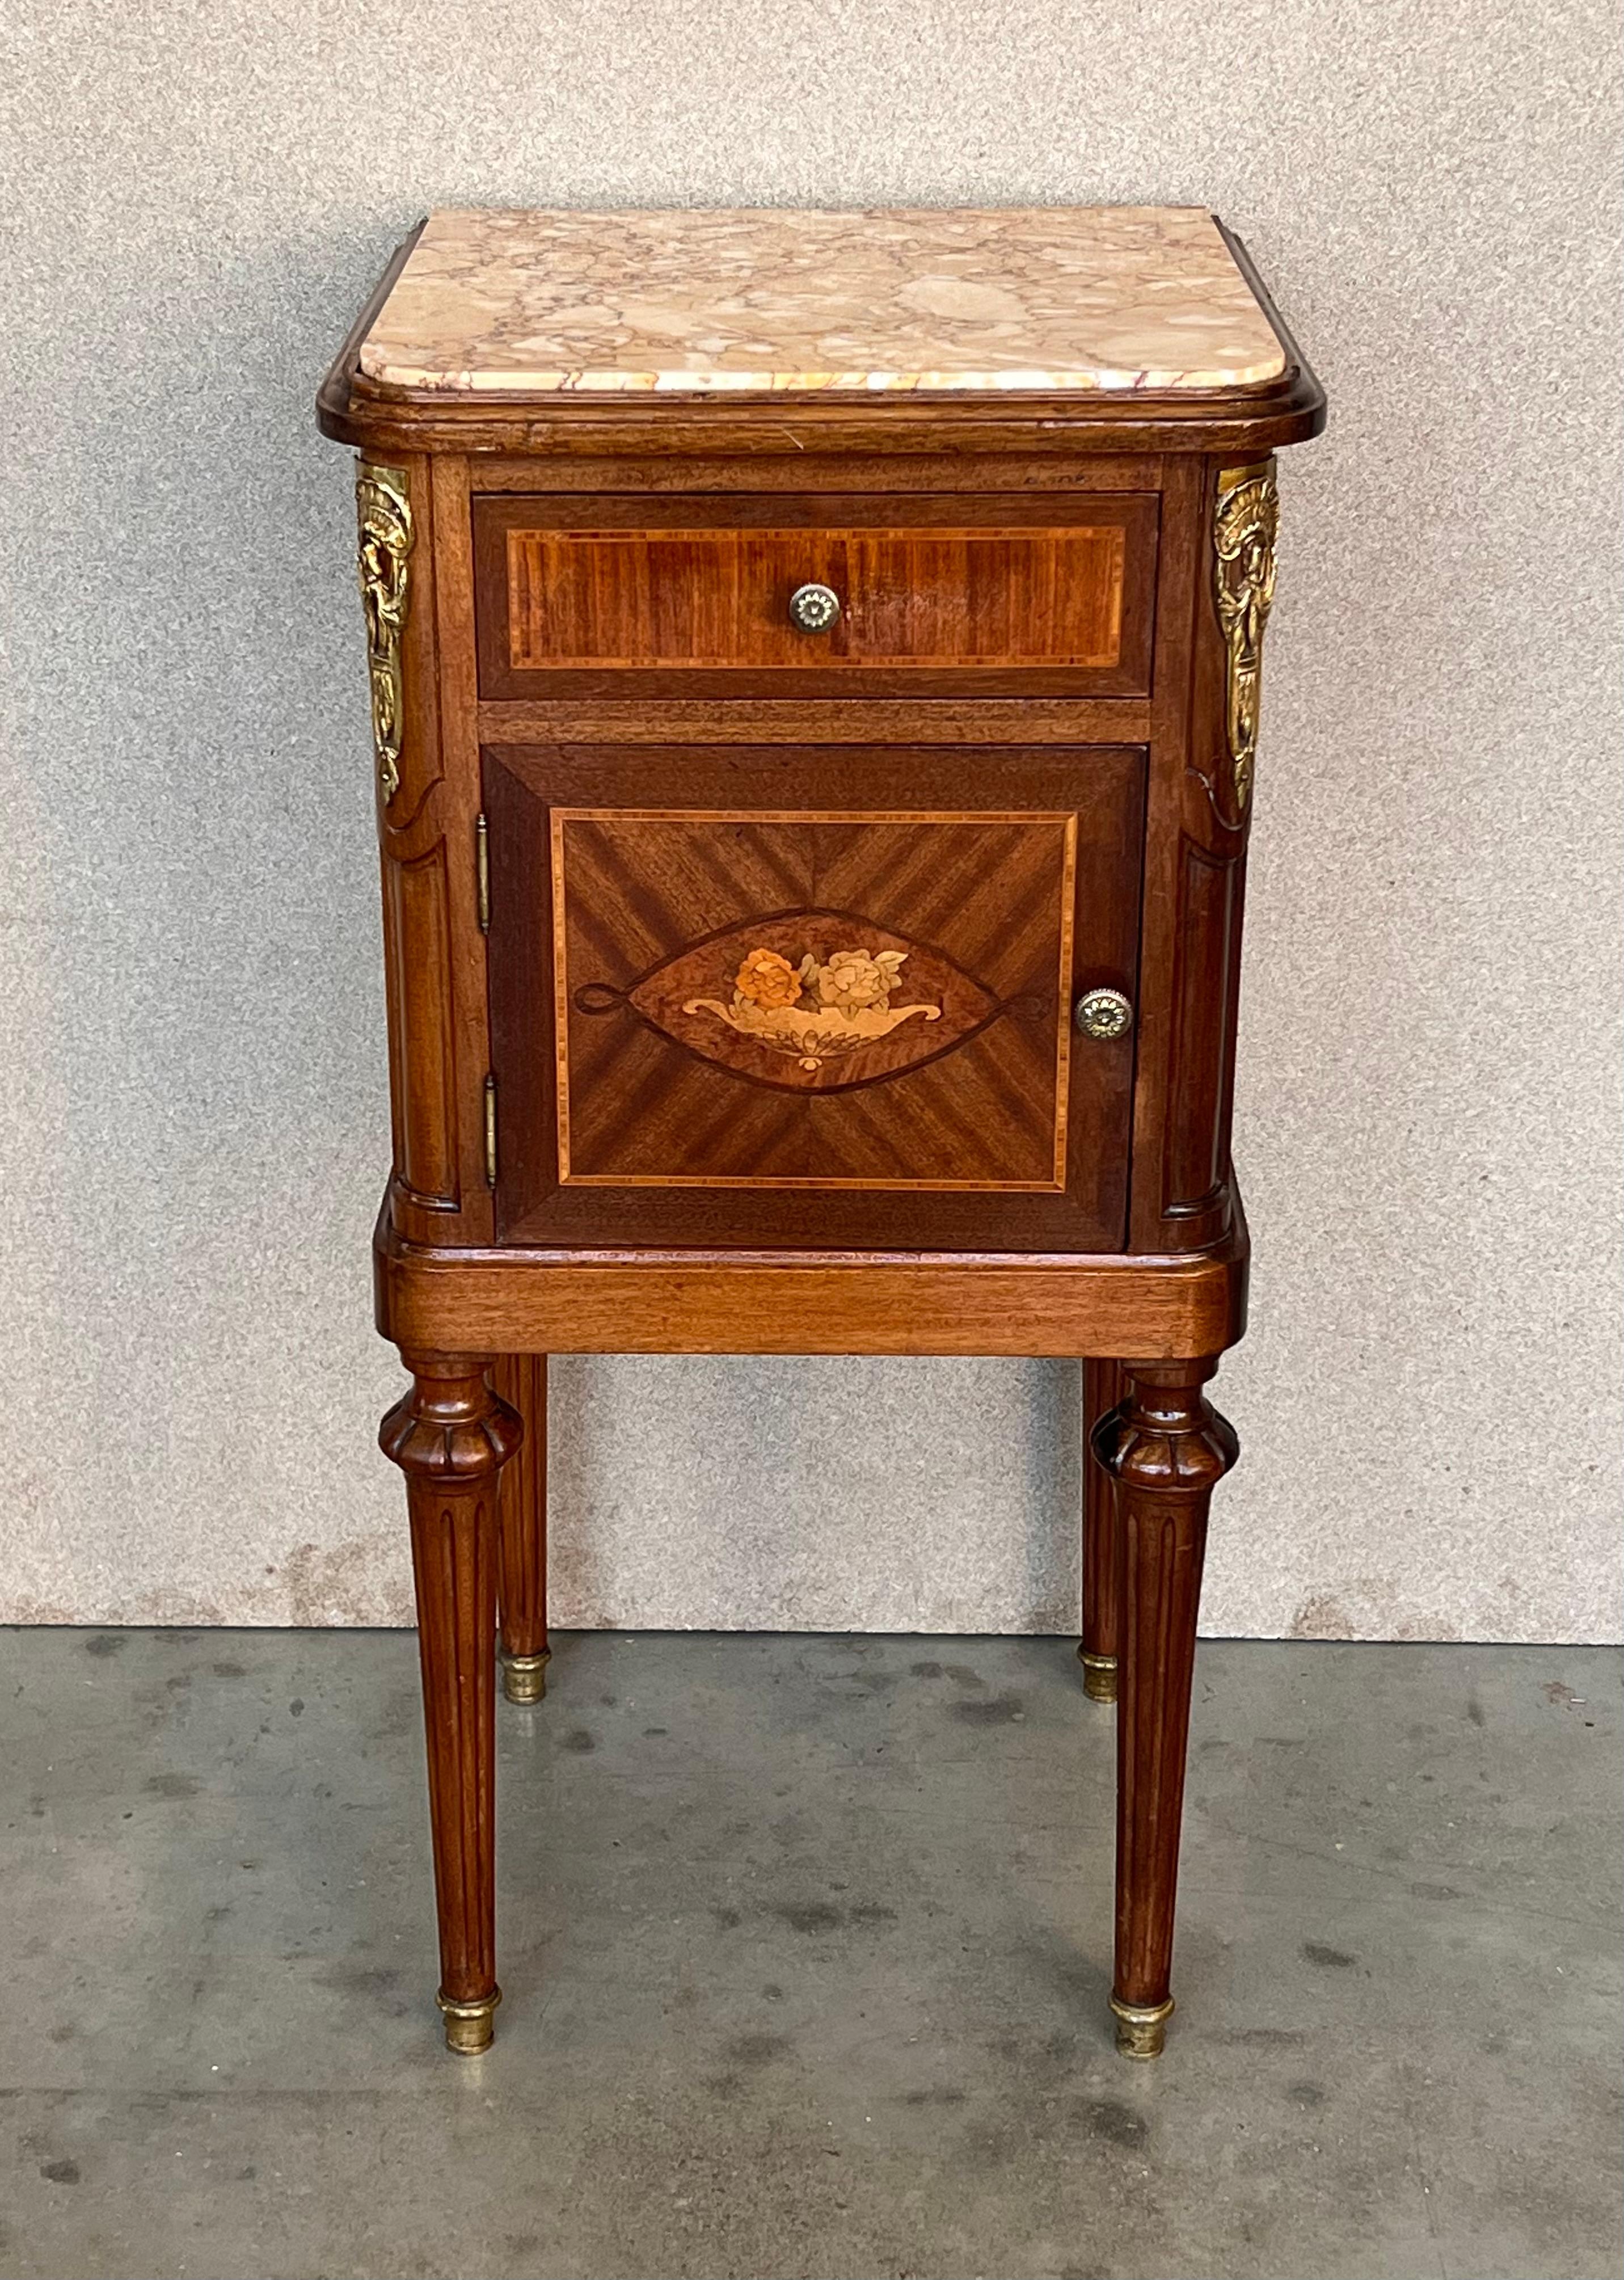 Rare et impressionnante table de chevet en acajou français dans le style de l'ébéniste Grohe Frères du 19ème siècle. Ce magnifique meuble, datant du troisième quart du XIXe siècle, a été fabriqué à la main de façon exquise. Il est exceptionnellement